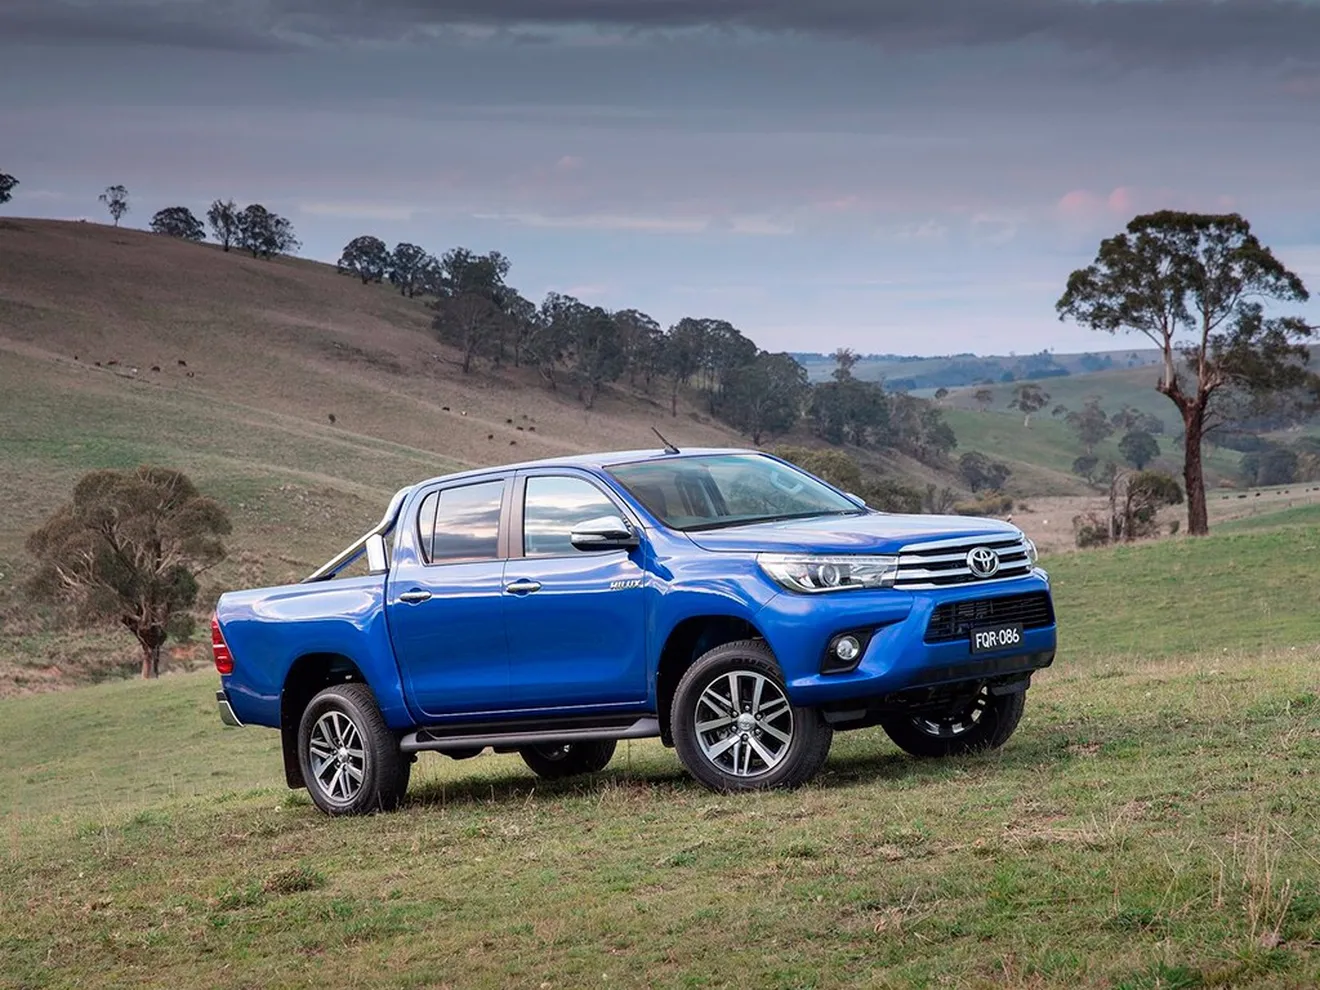 Toyota Hilux 2016, renovación completa para una pick-up famosa